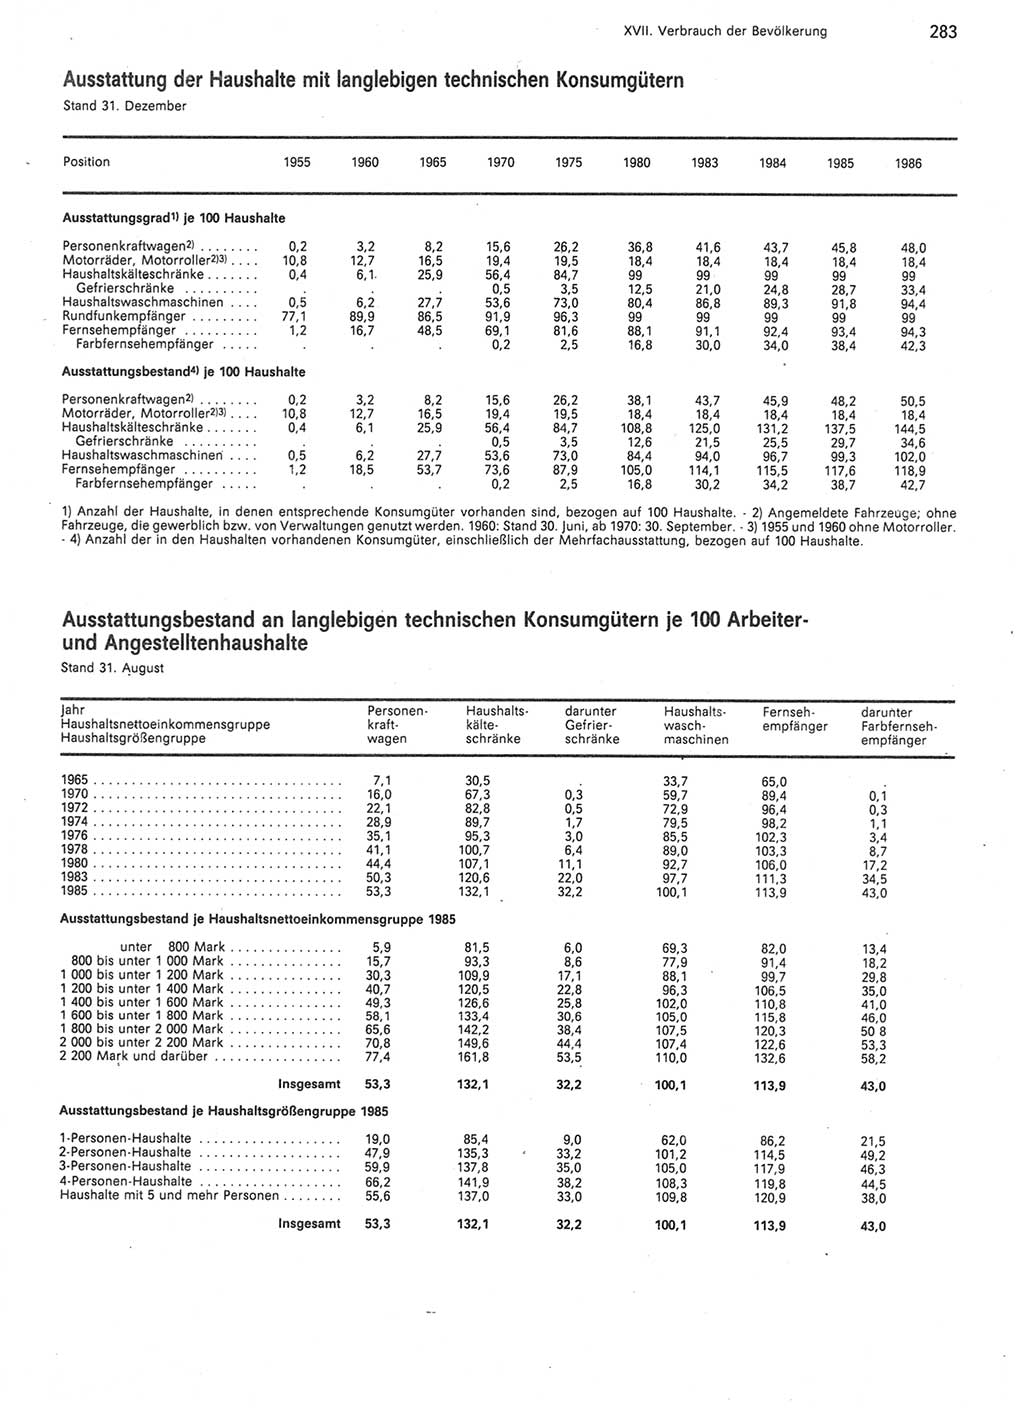 Statistisches Jahrbuch der Deutschen Demokratischen Republik (DDR) 1987, Seite 283 (Stat. Jb. DDR 1987, S. 283)